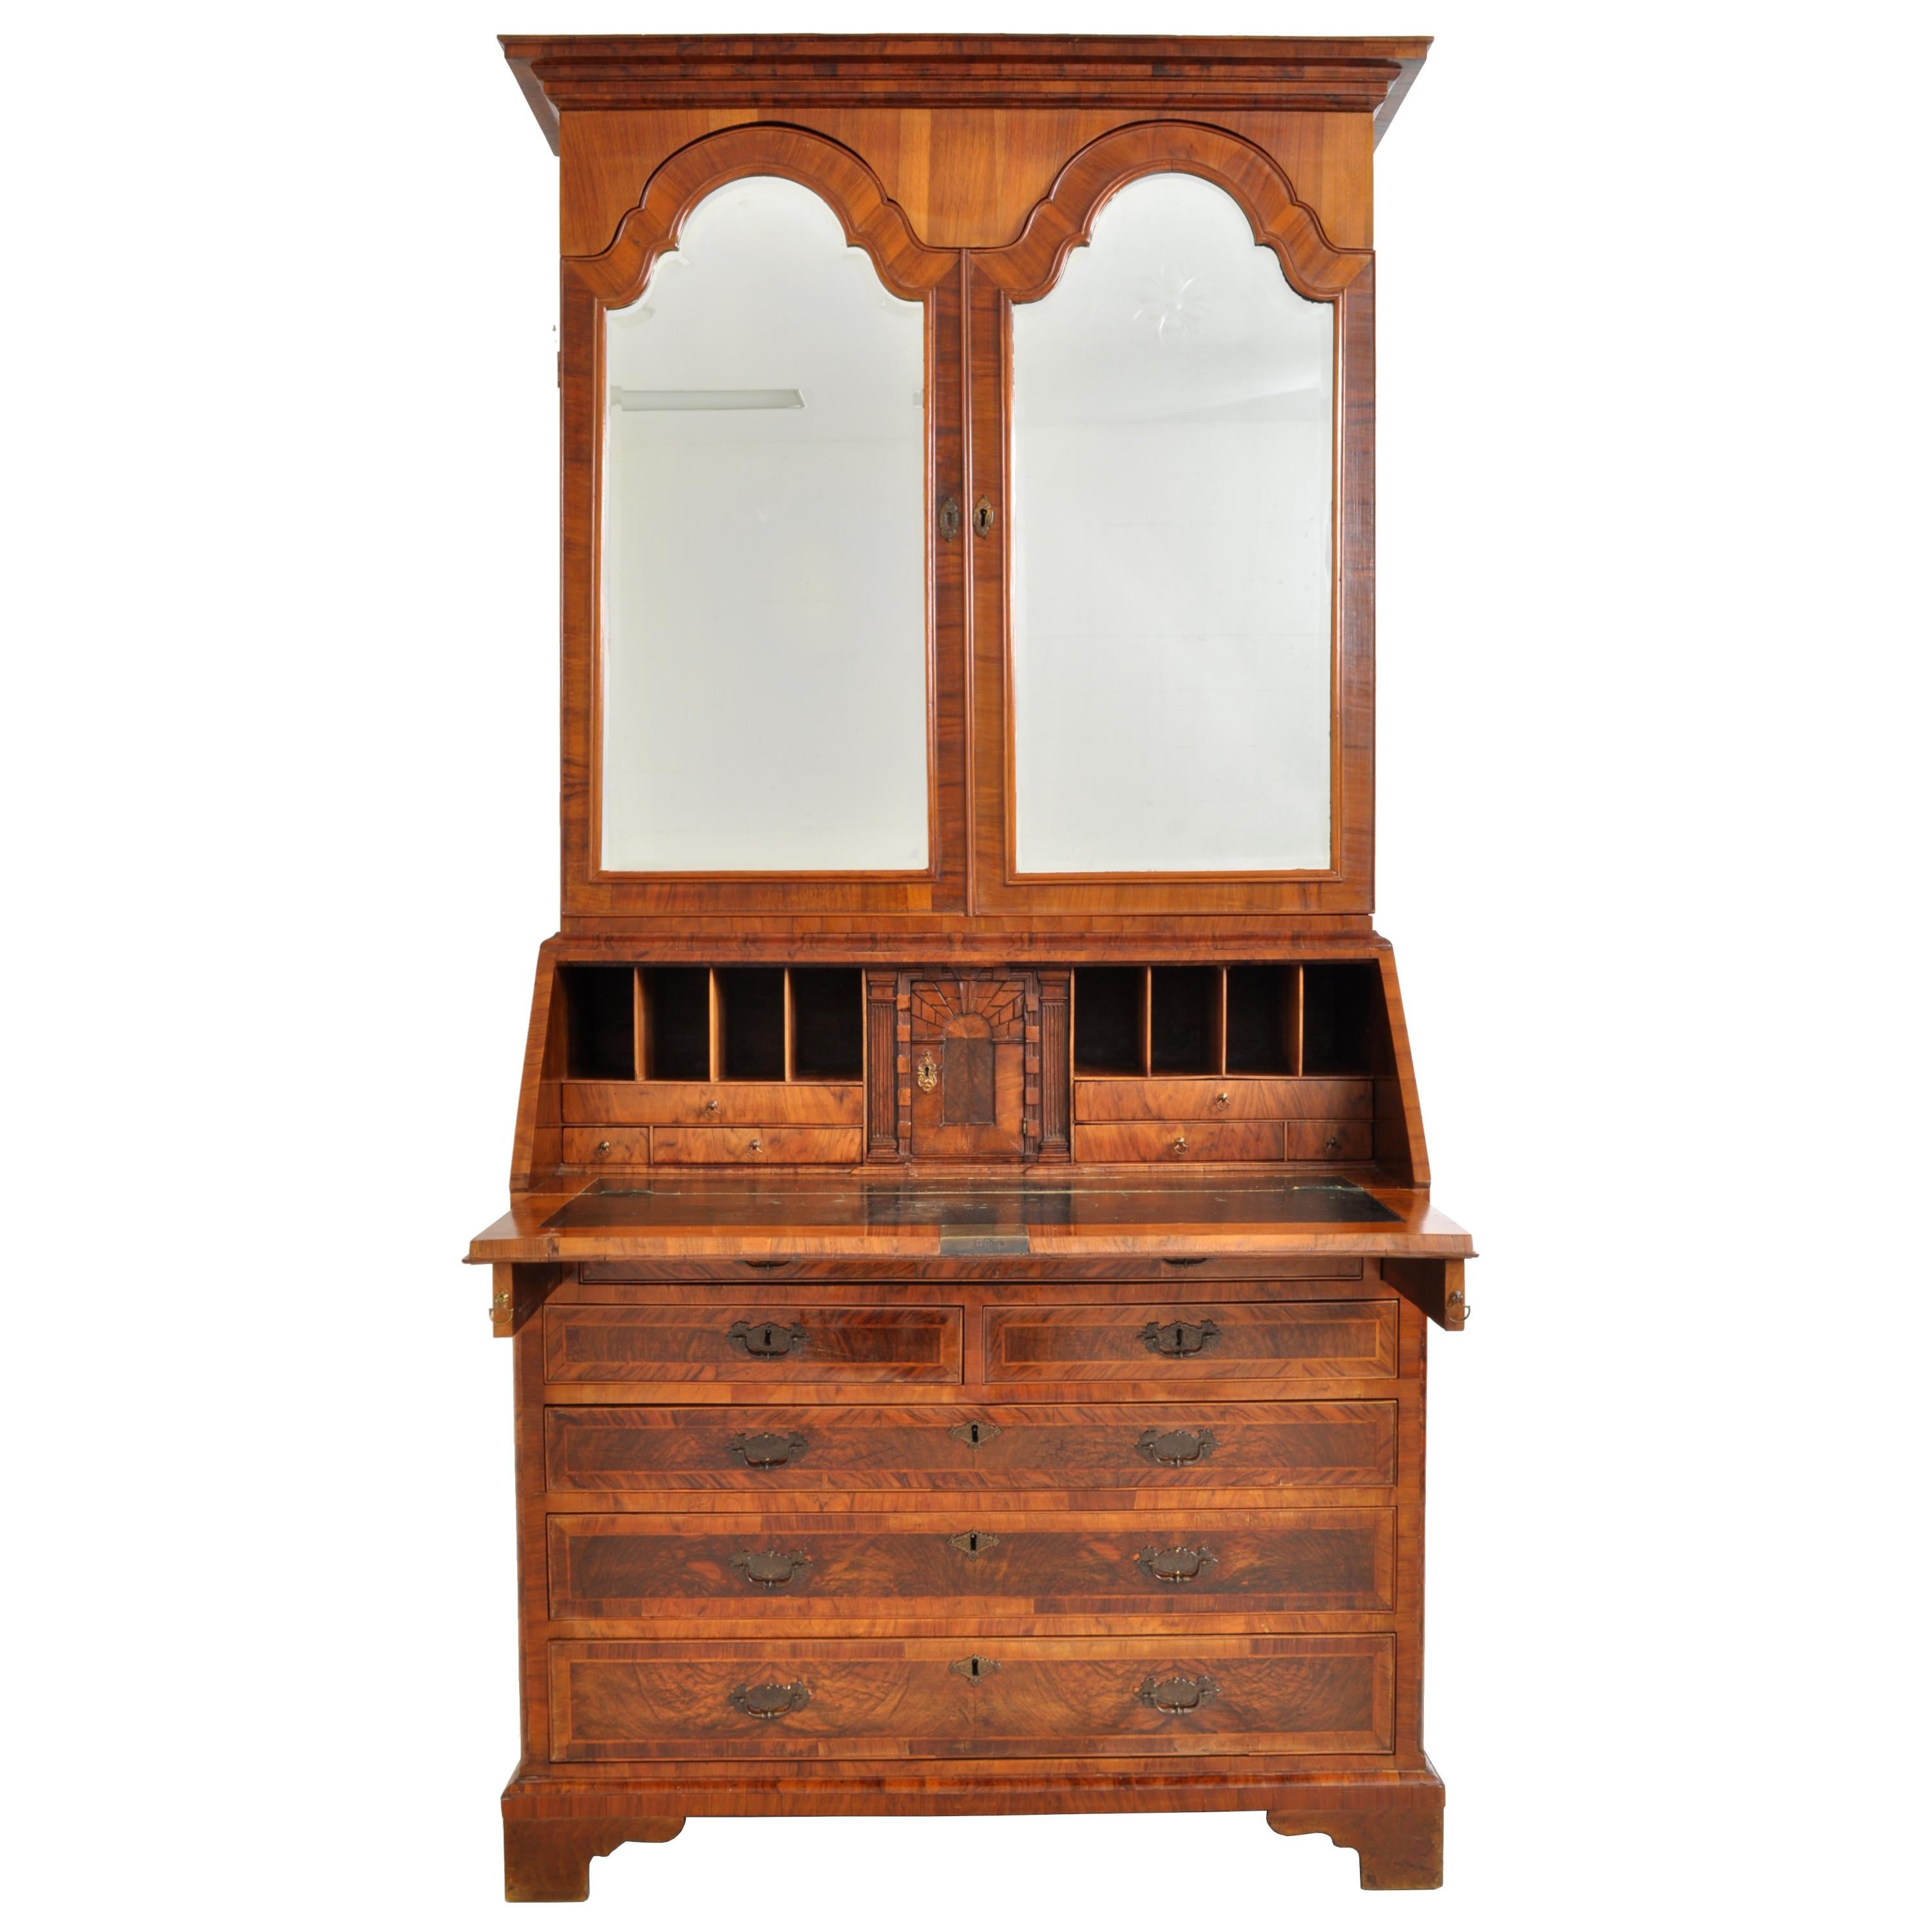 Mid-18th Century Antique Georgian George II Figured Walnut Bookcase Bureau Secretary Desk, 1750 For Sale